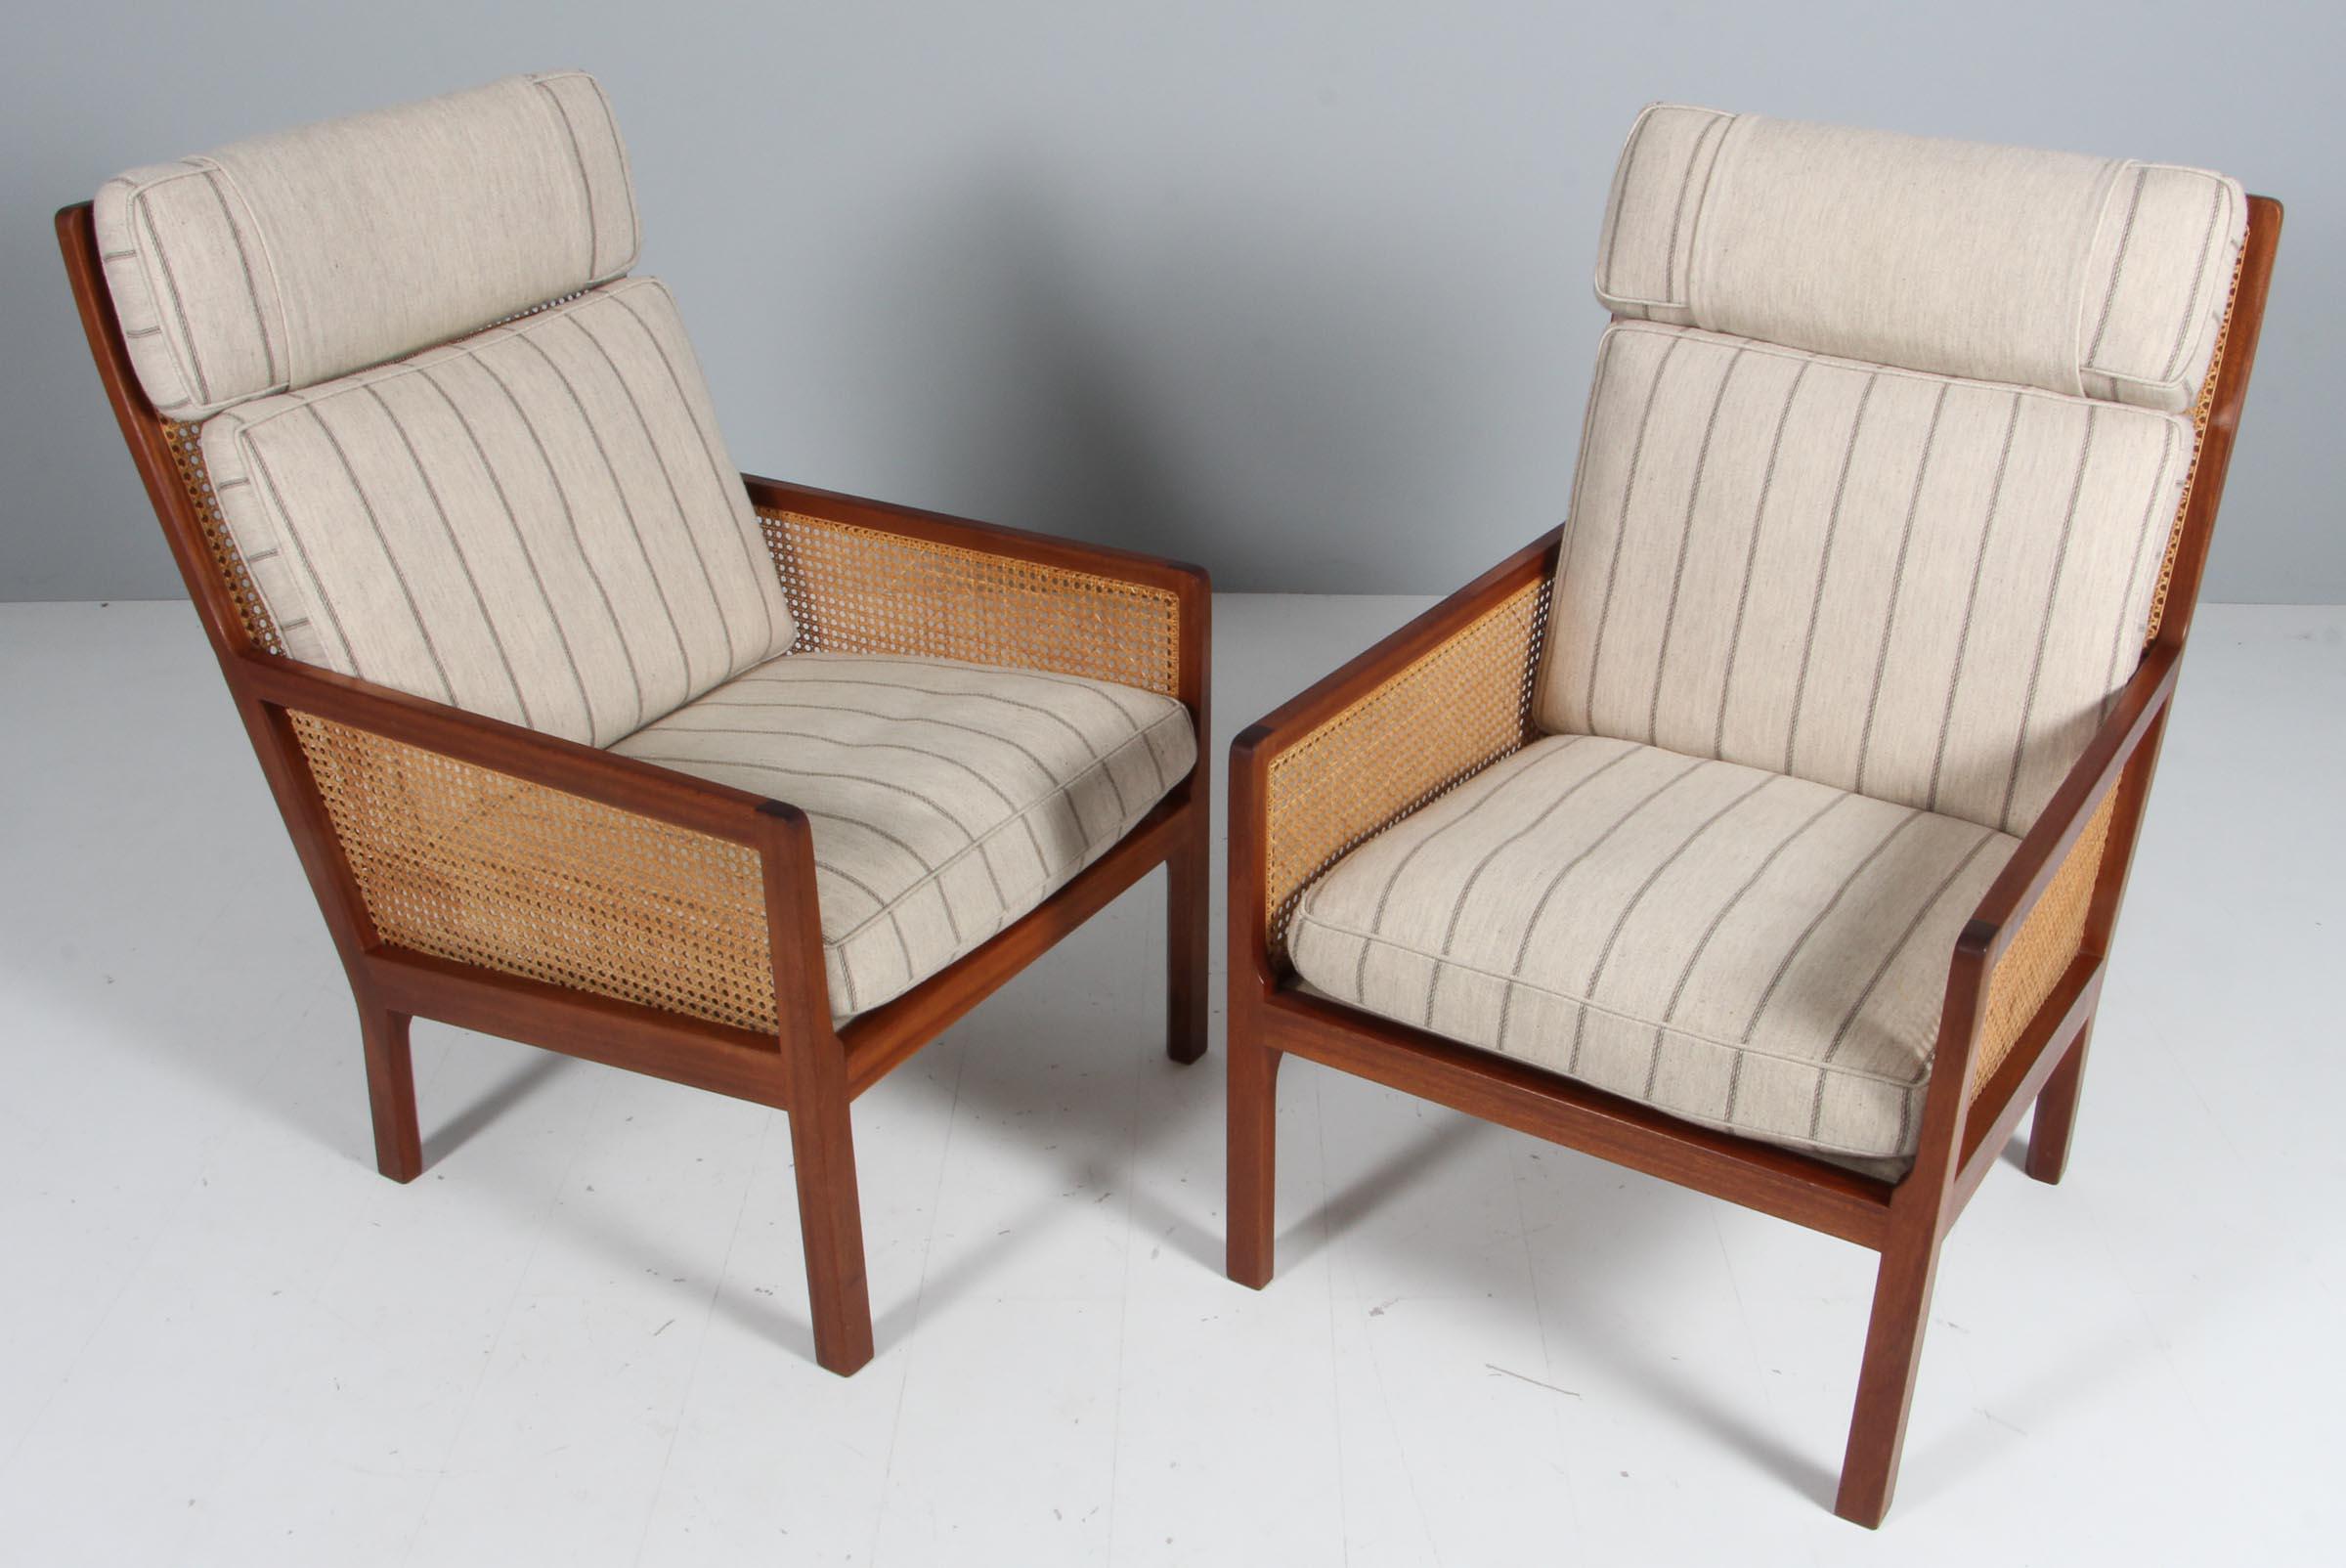 Paire de chaises longues Bernt Pedersen avec structure en acajou, dossier et côtés en rotin.

Tapisserie d'origine en laine.

Fabriqué par Wørtz Snedkeri.